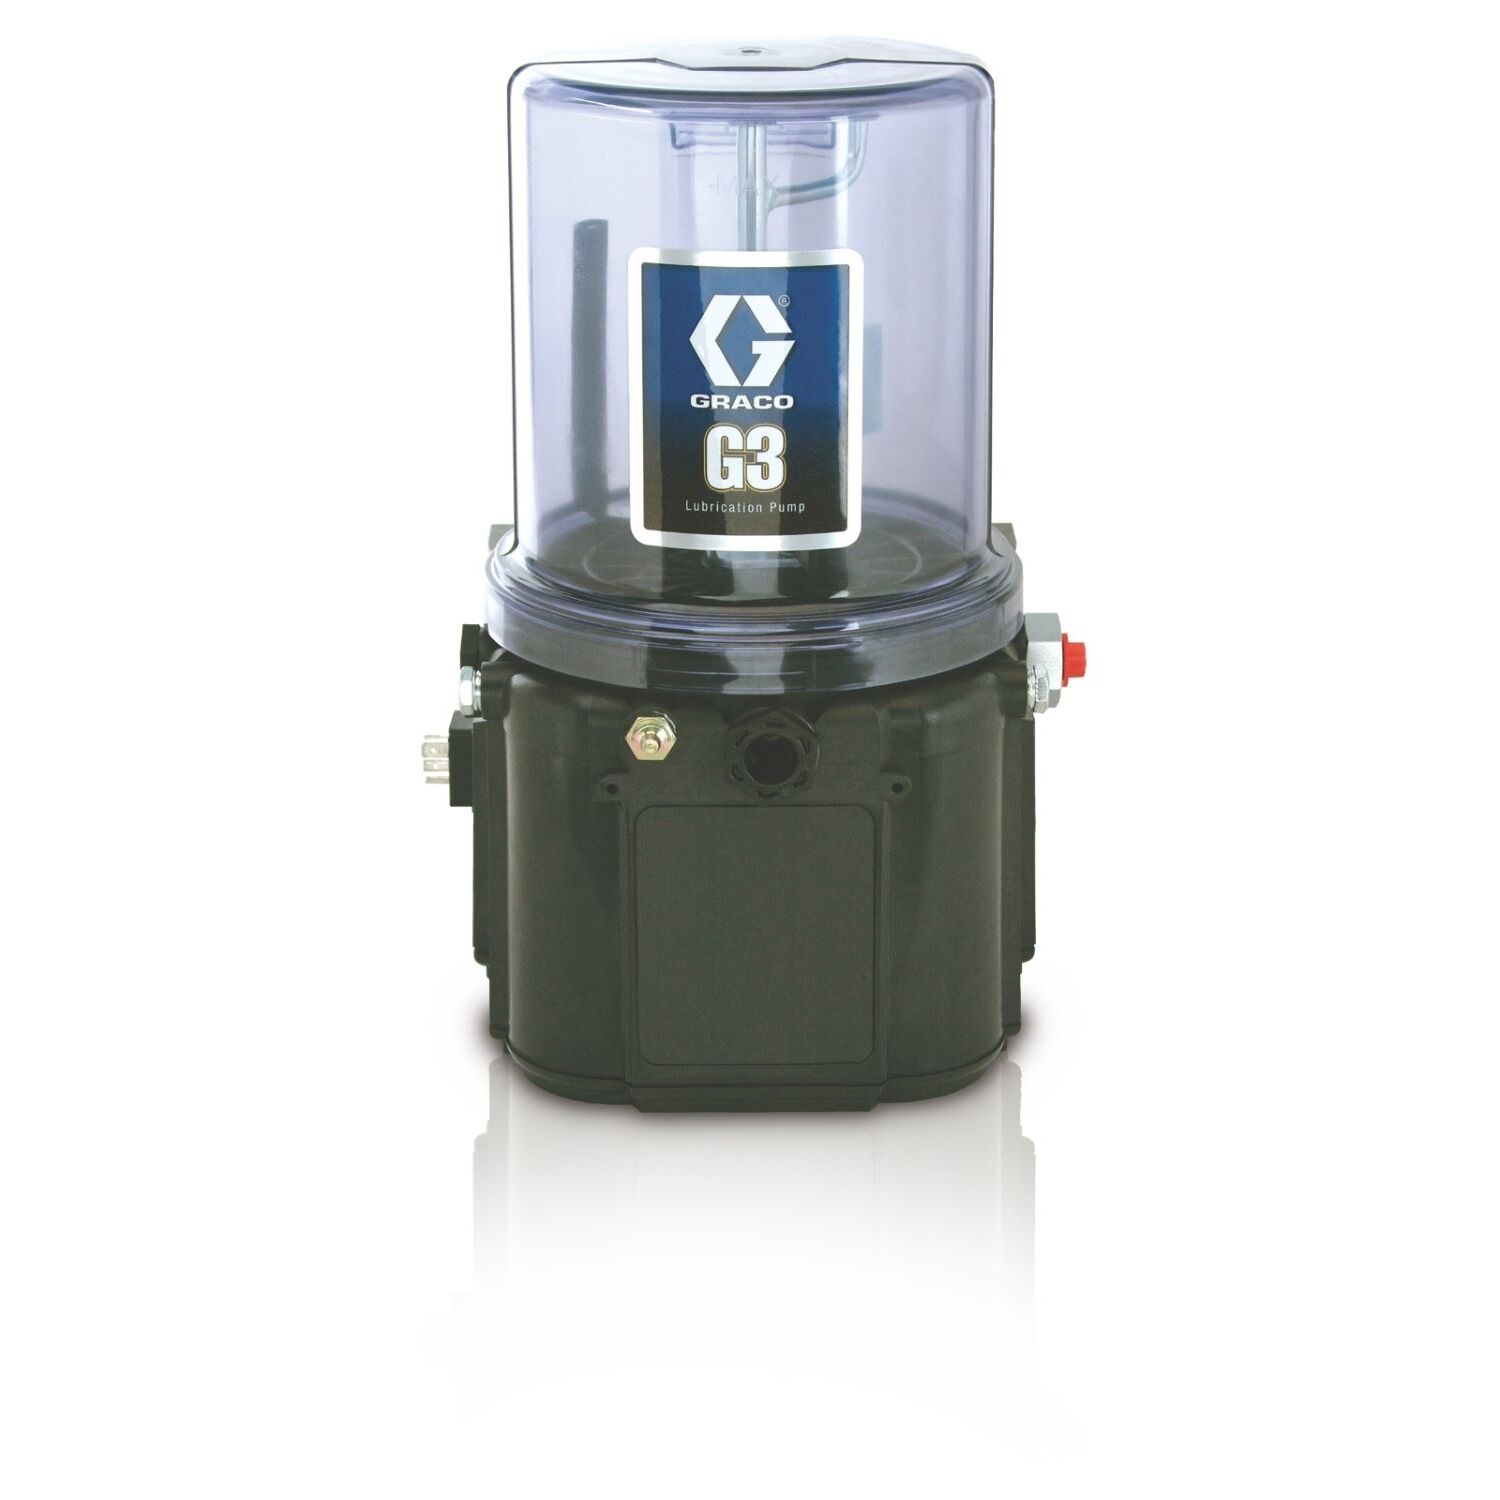 1 Bomba de lubricación con grasa estándar G3™, 24 VCC, 2 litros, CPC